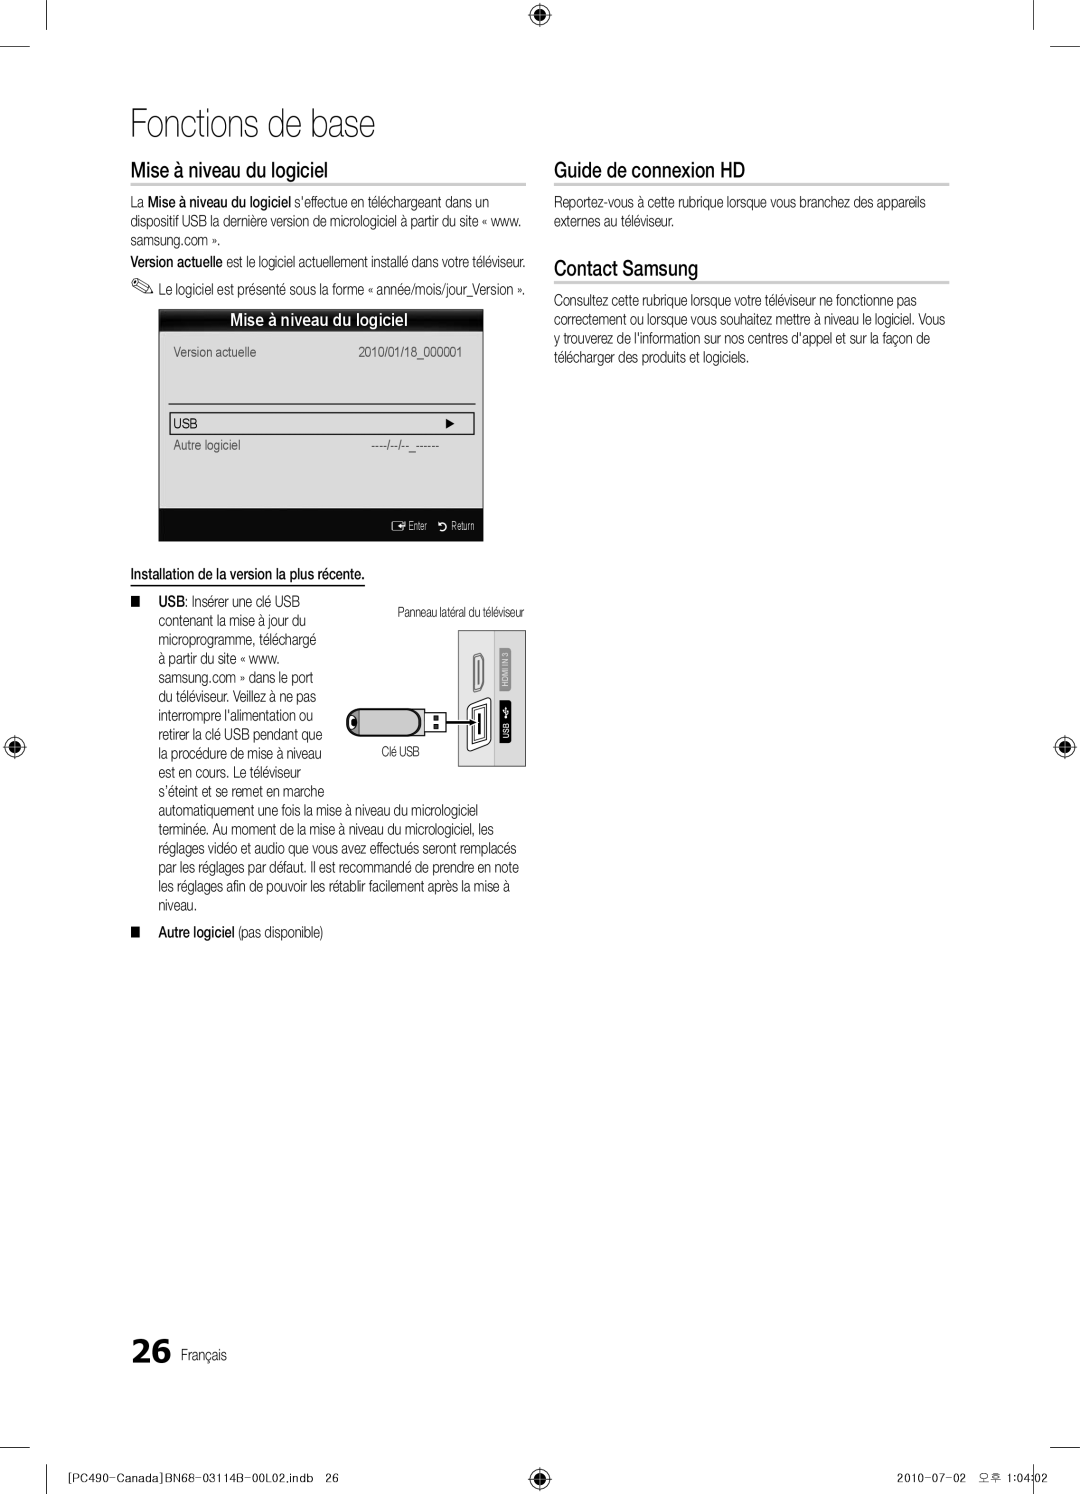 Samsung BN68-03114B-01, PN50C490 Mise à niveau du logiciel, Guide de connexion HD, Fonctions de base, Contact Samsung 